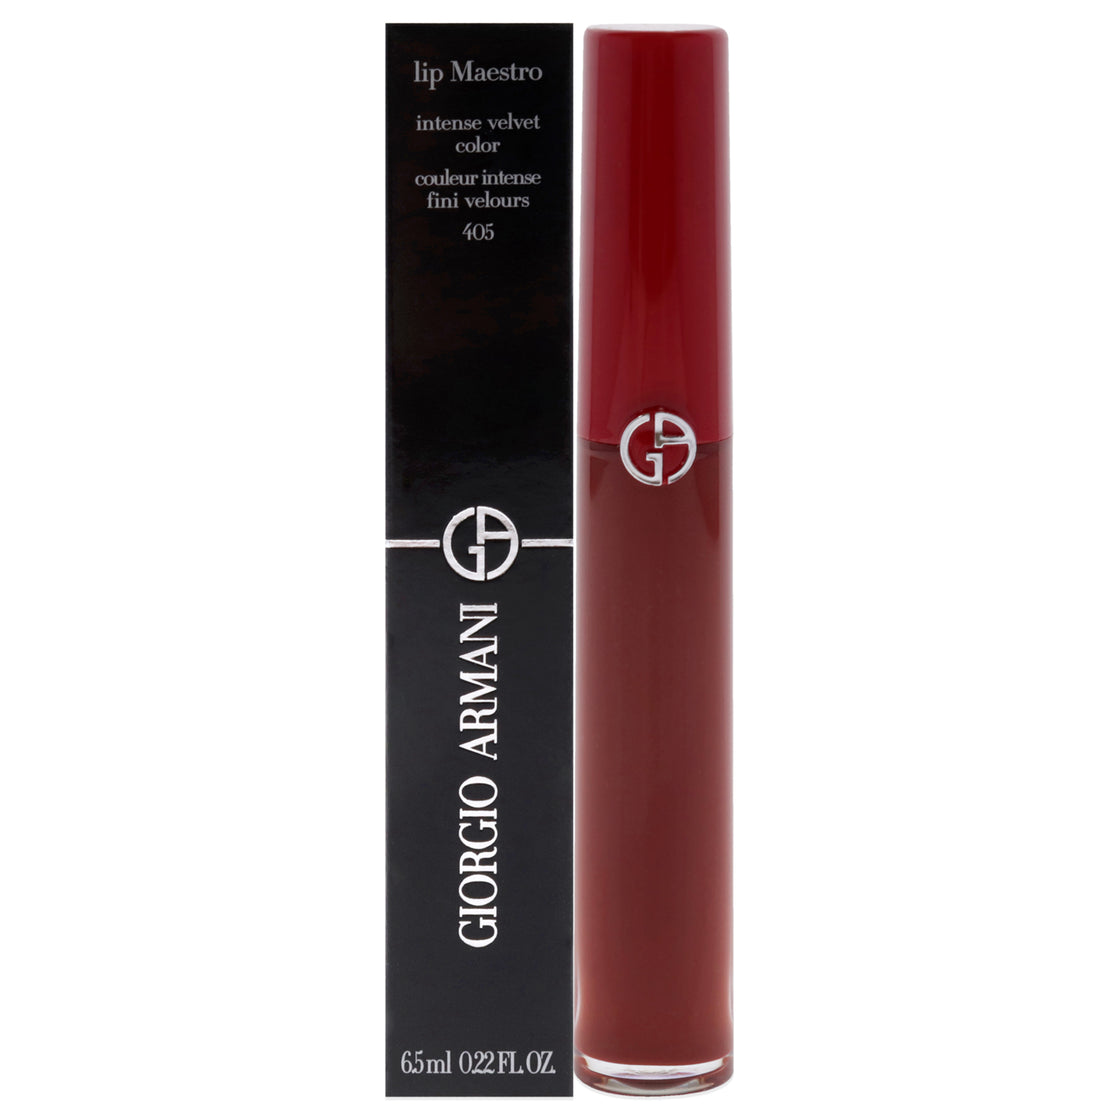 Lip Maestro Intense Velvet Color - 405 Sultan by Giorgio Armani for Women - 0.22 oz Lipstick